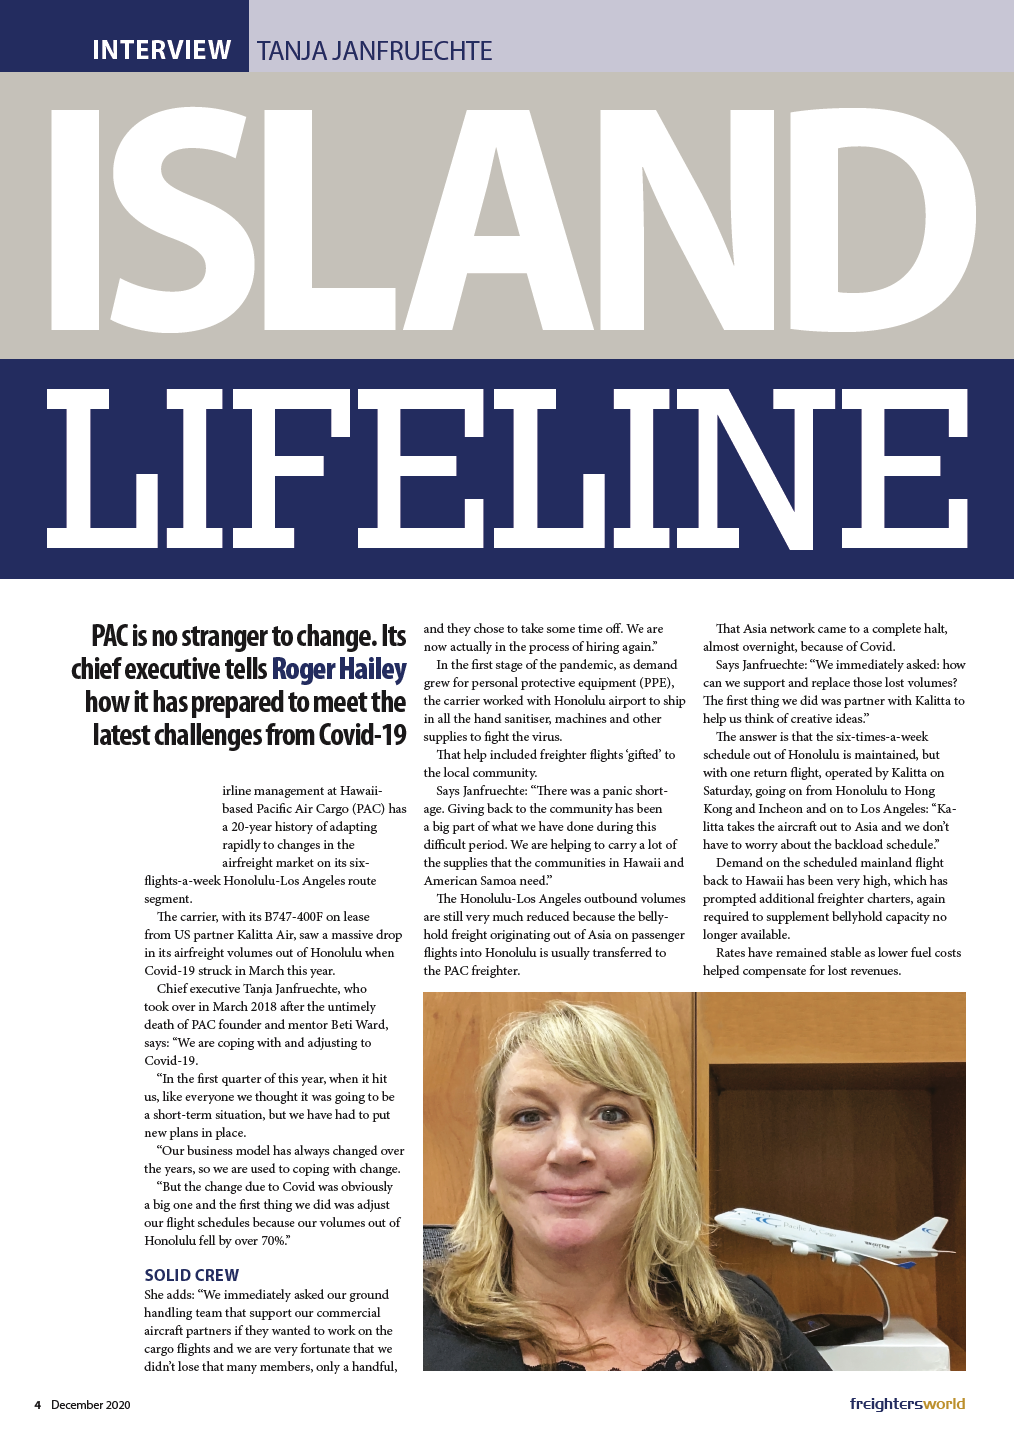 Island Lifeline Article With Tanja